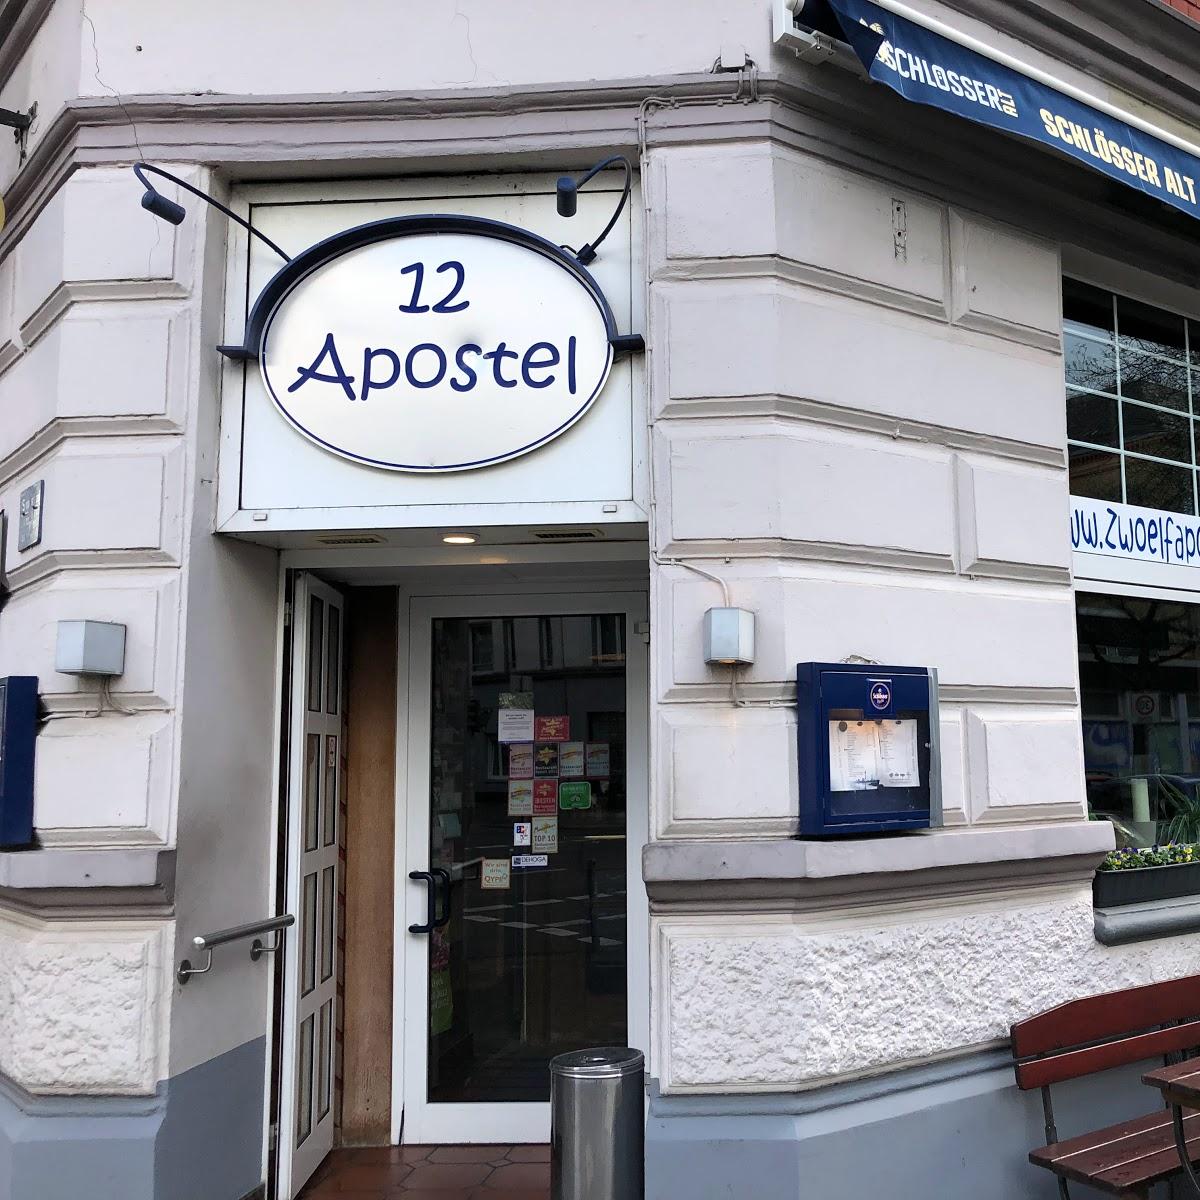 Restaurant "Peter Wolf Zwölf Apostel" in Düsseldorf